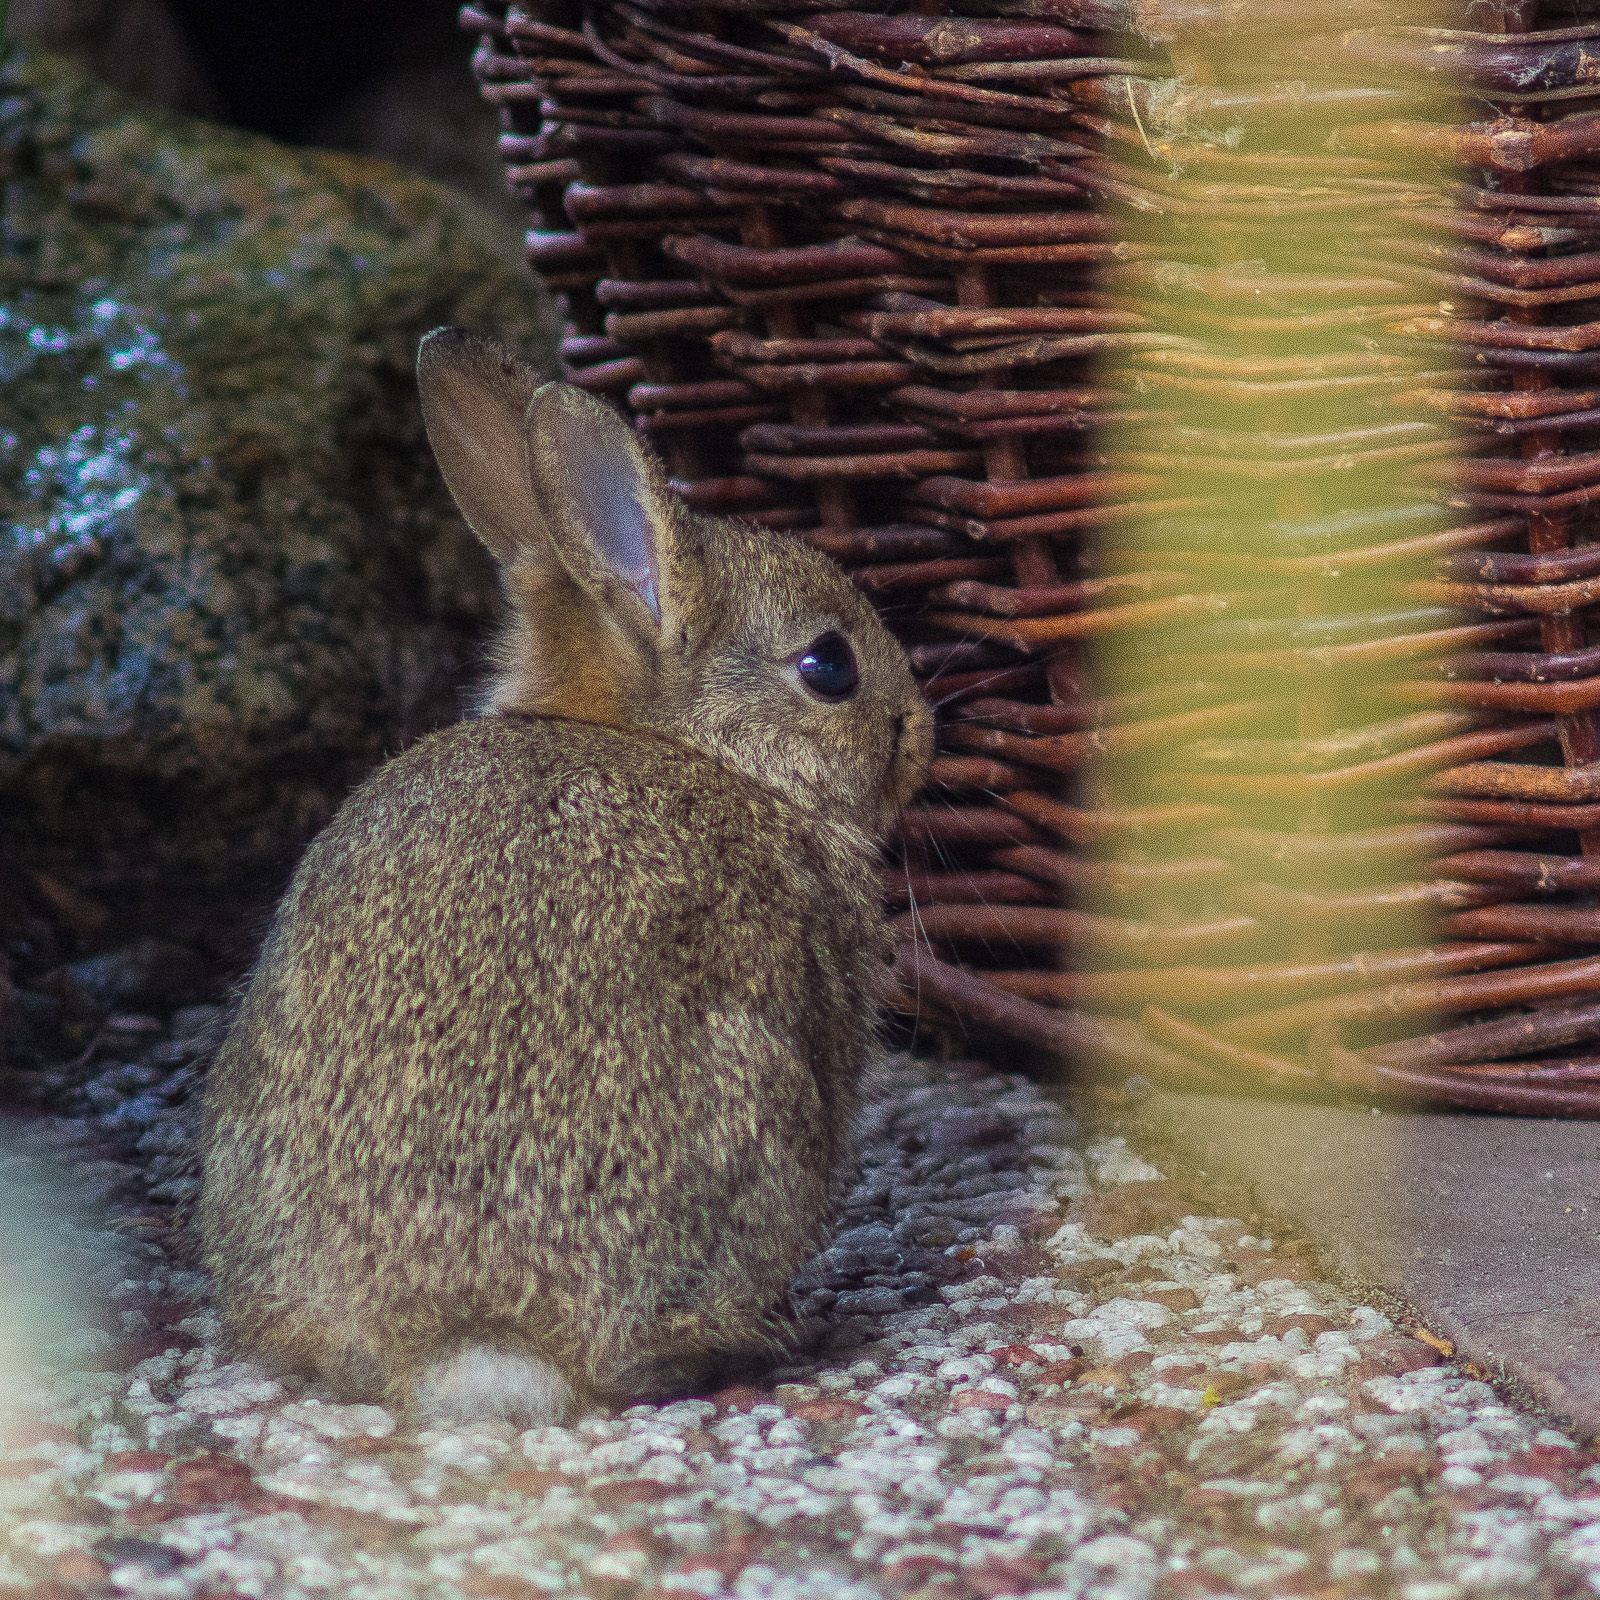 Ein junges Kaninchen sitzt mit dem Rücken zum Fotografen auf einer Stein-Terrassenplatte. Das Bild ist quadratisch zugeschnitten, das Kaninchen füllt etwa das untere linke Viertel, das Auge ist ziemlich exakt in der Bildmitte. Links oben ein großer, dunkler granitähnlicher Stein, das obere rechte Viertel ist ausgefüllt von einem rotbraunen Weidenkorb.